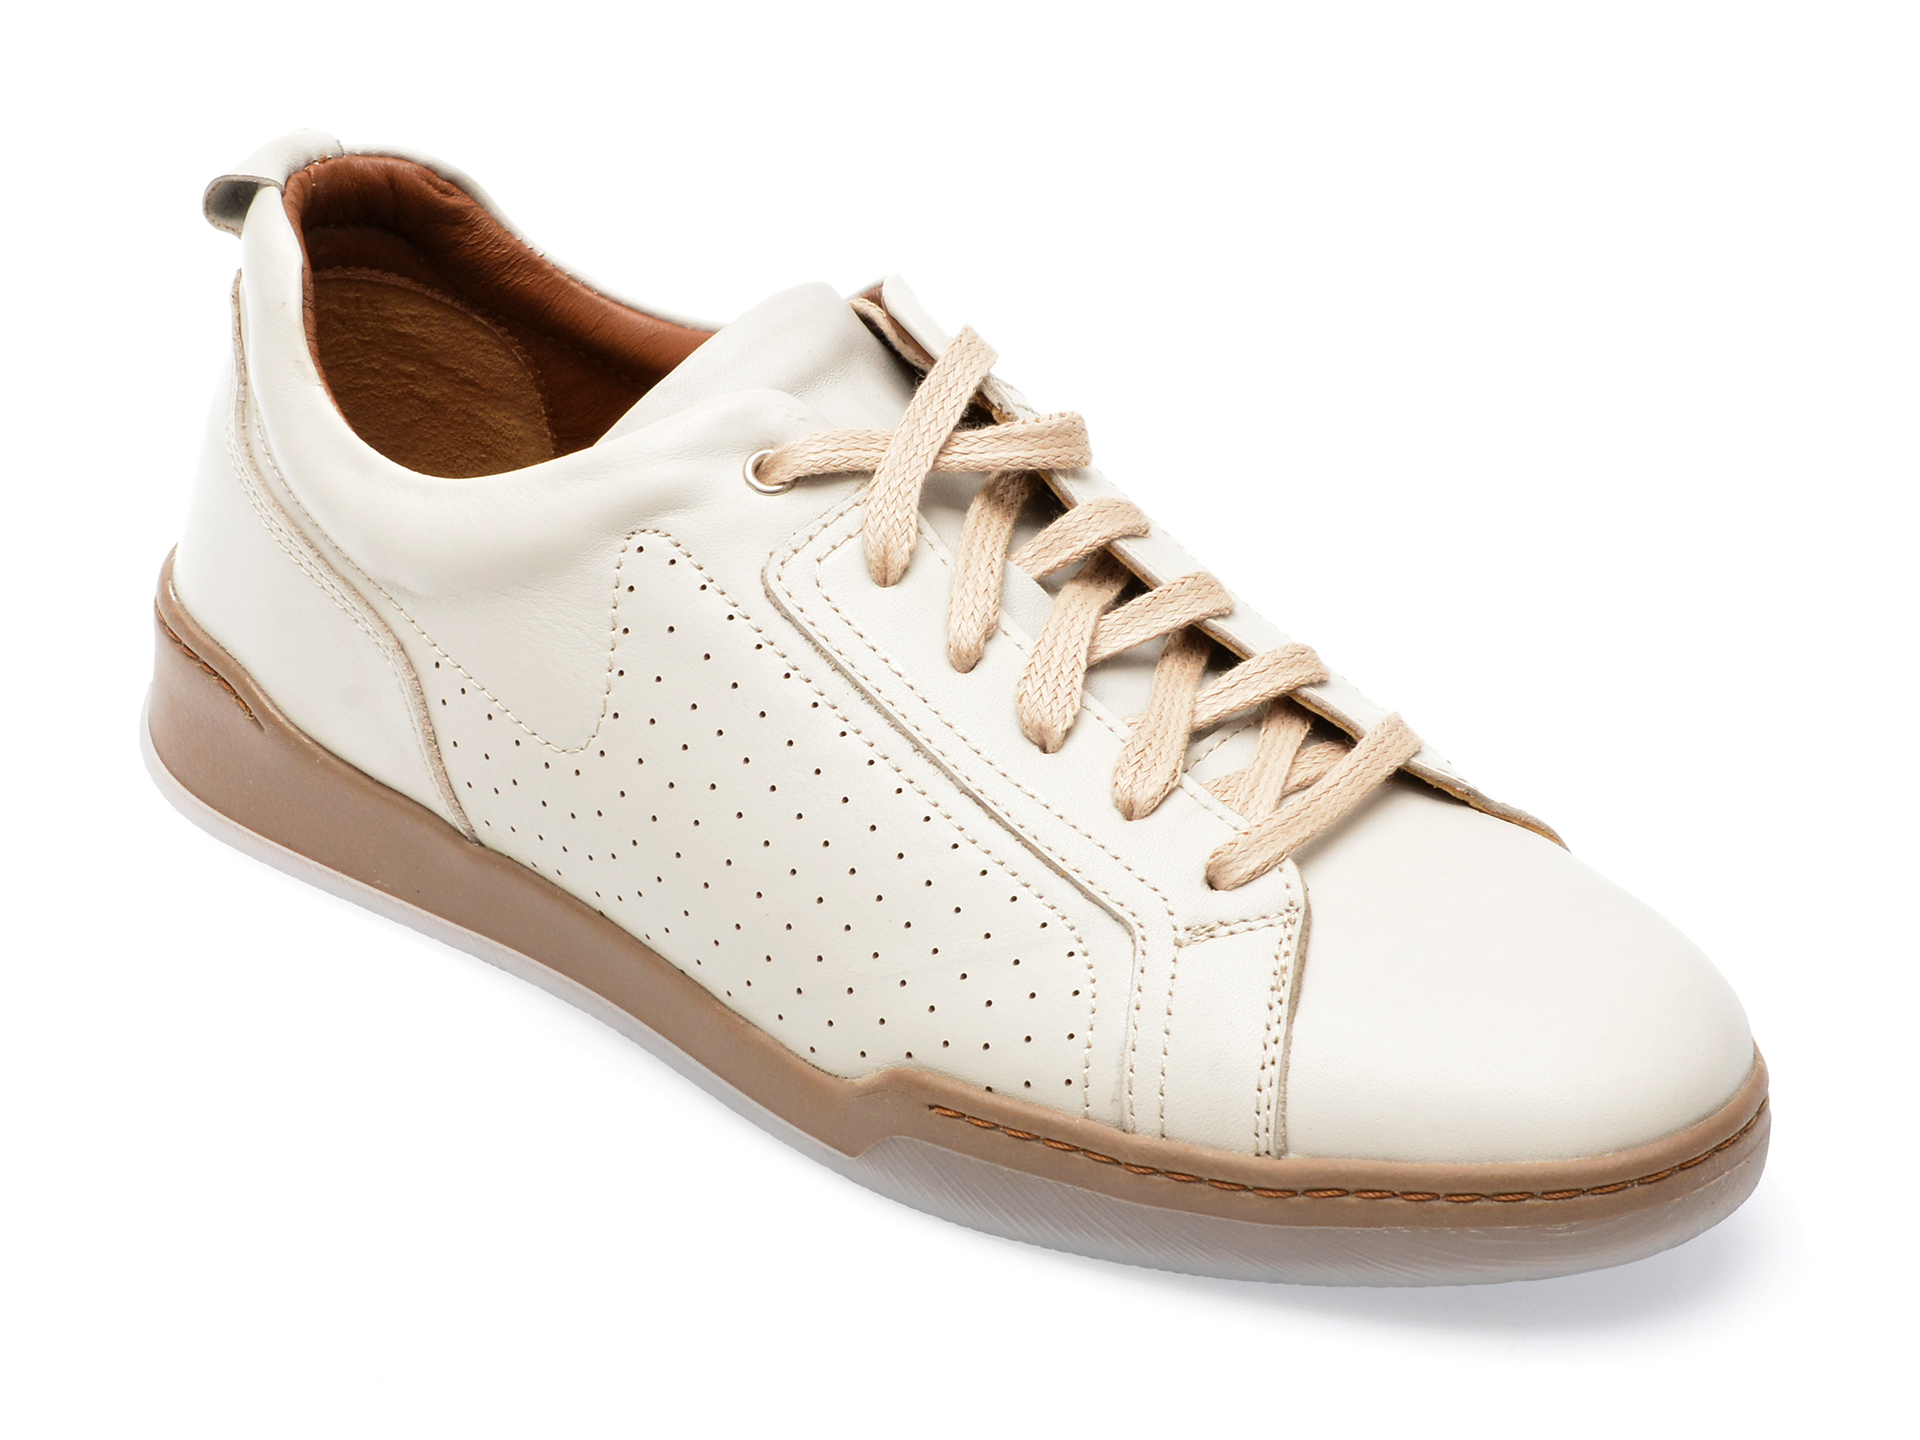 Pantofi GRYXX albi, 33774, din piele naturala